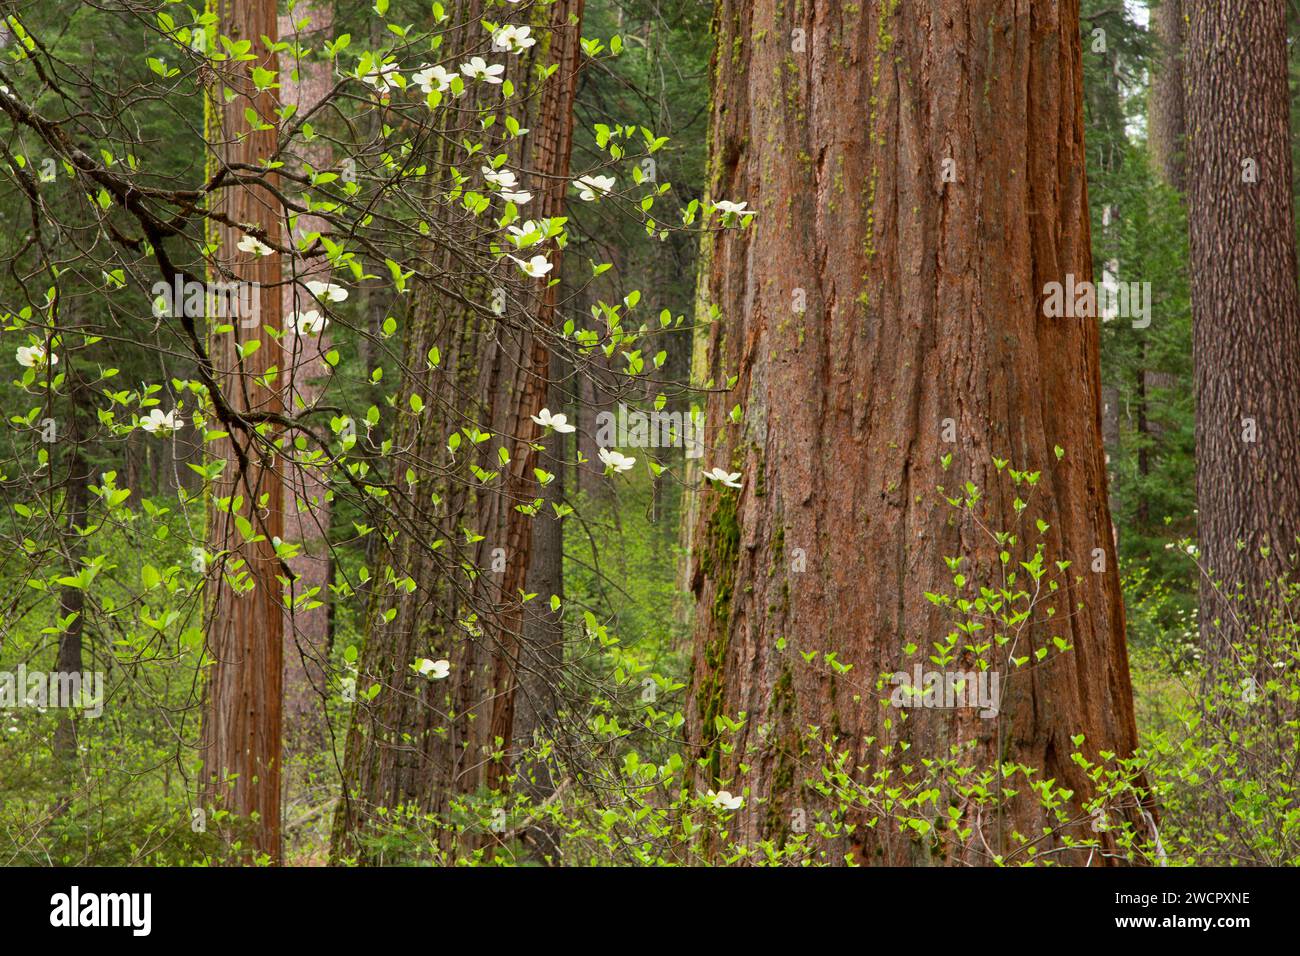 Cornouille du Pacifique avec séquoia à North Grove, parc national Calaveras Big Trees, Ebbetts Pass National Scenic Byway, Californie Banque D'Images